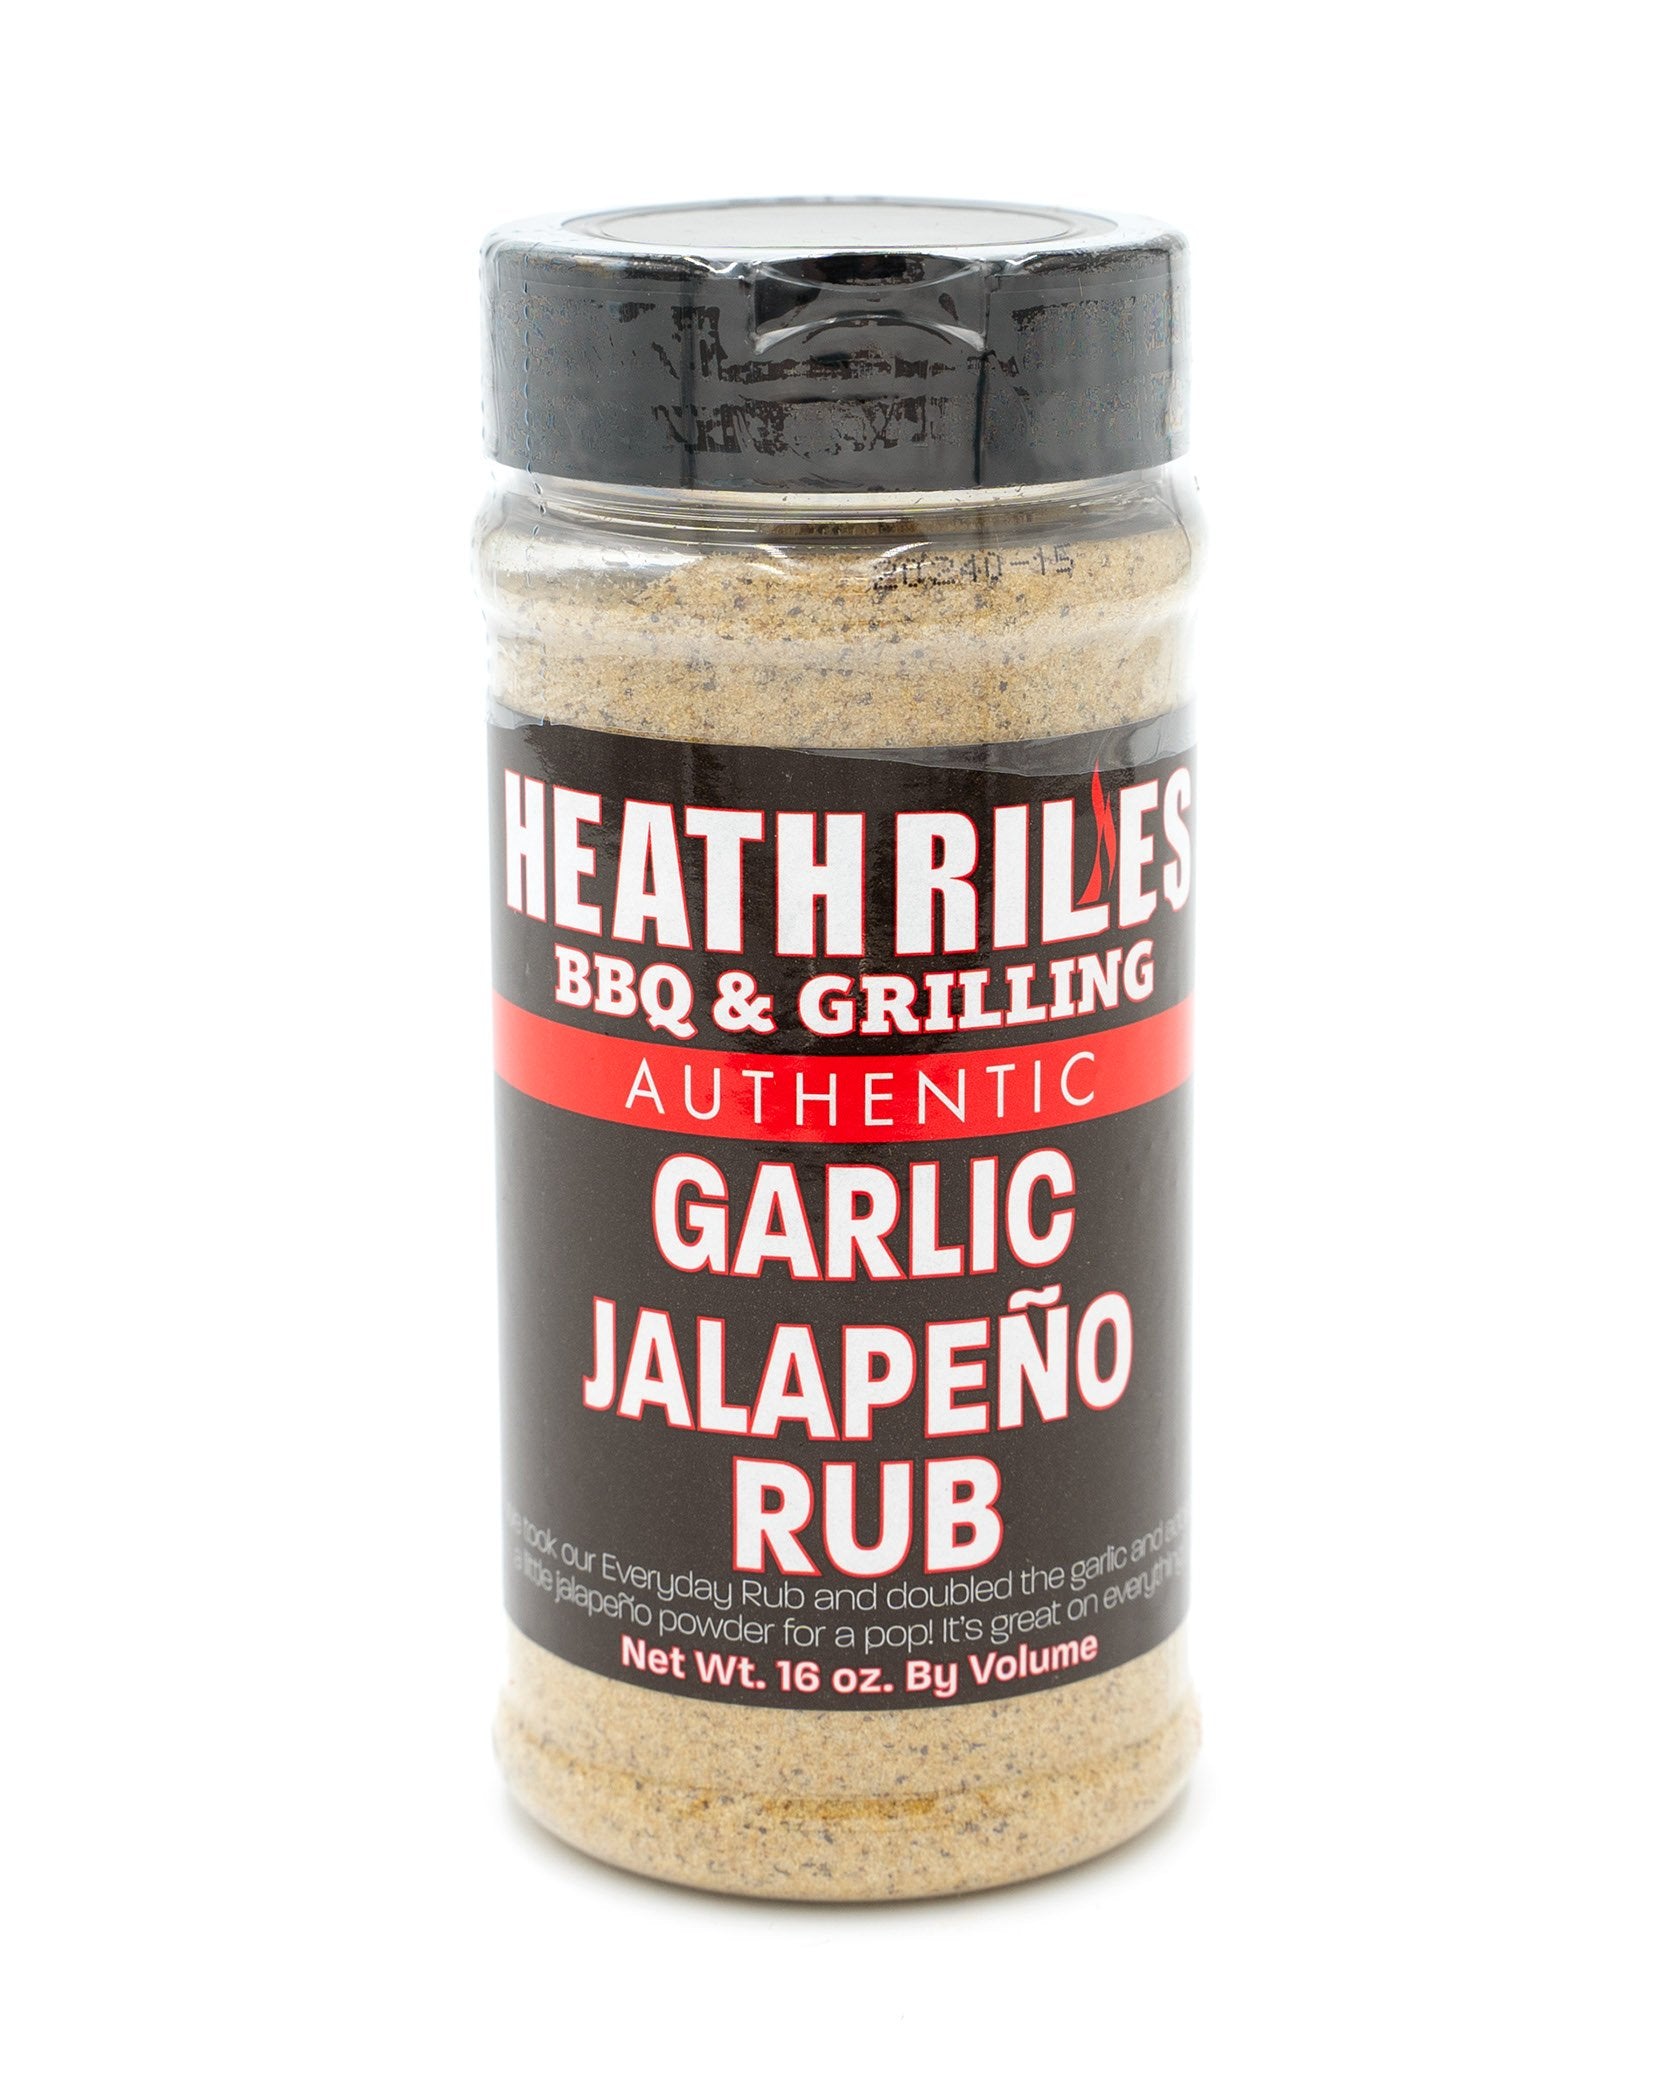 Garlic Jalapeño Rub | Heath Riles BBQ